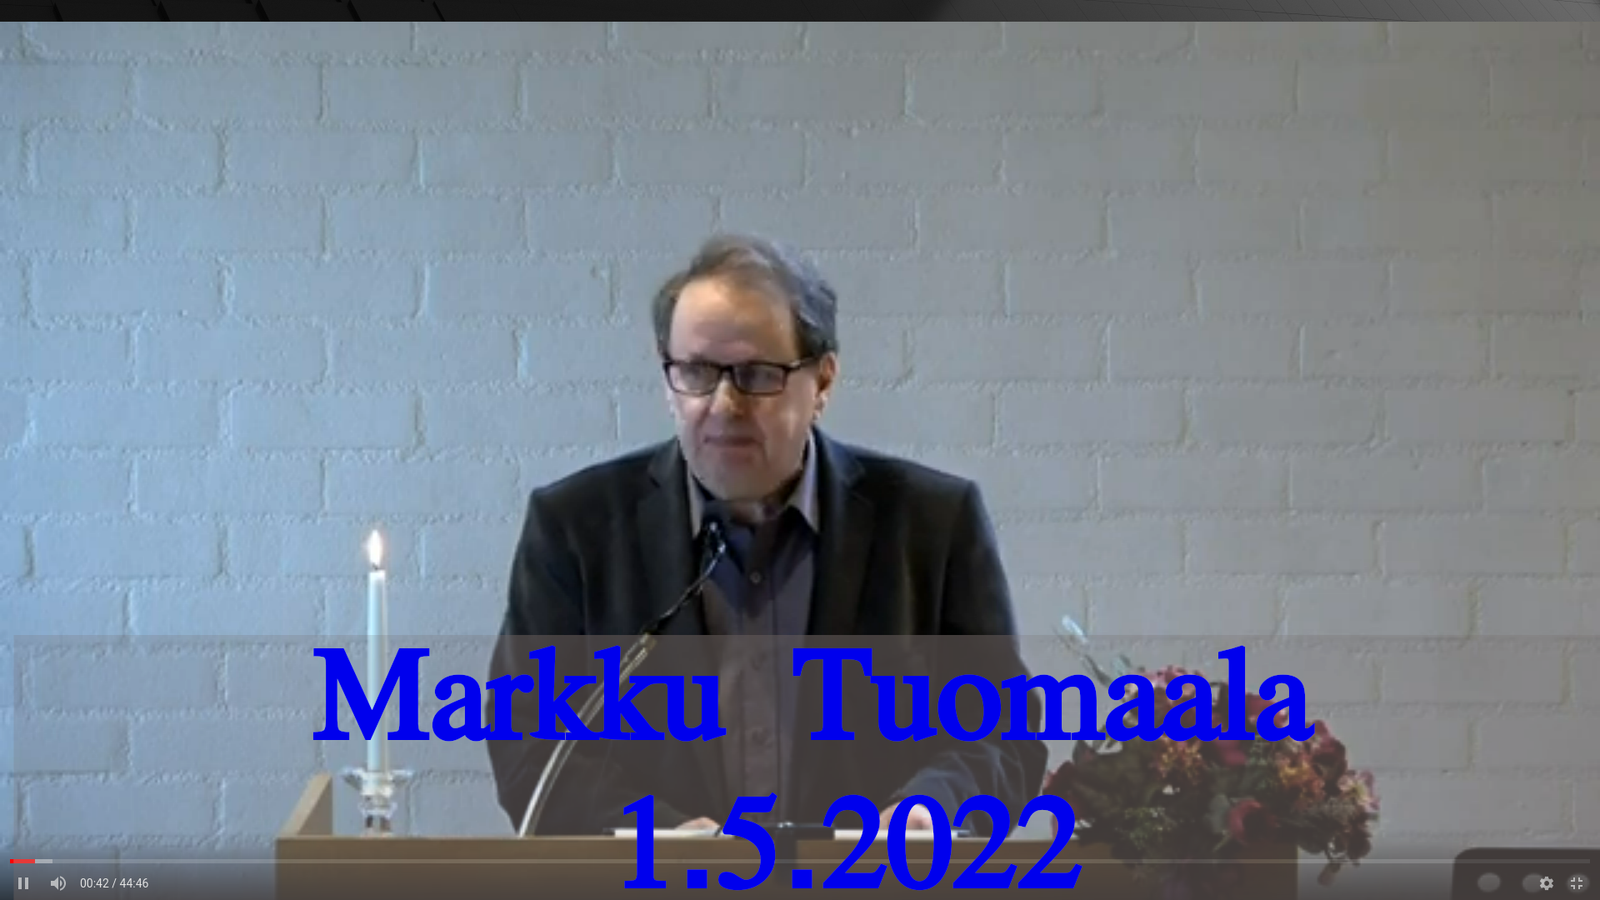 Markku Tuomaala 1.5.2022